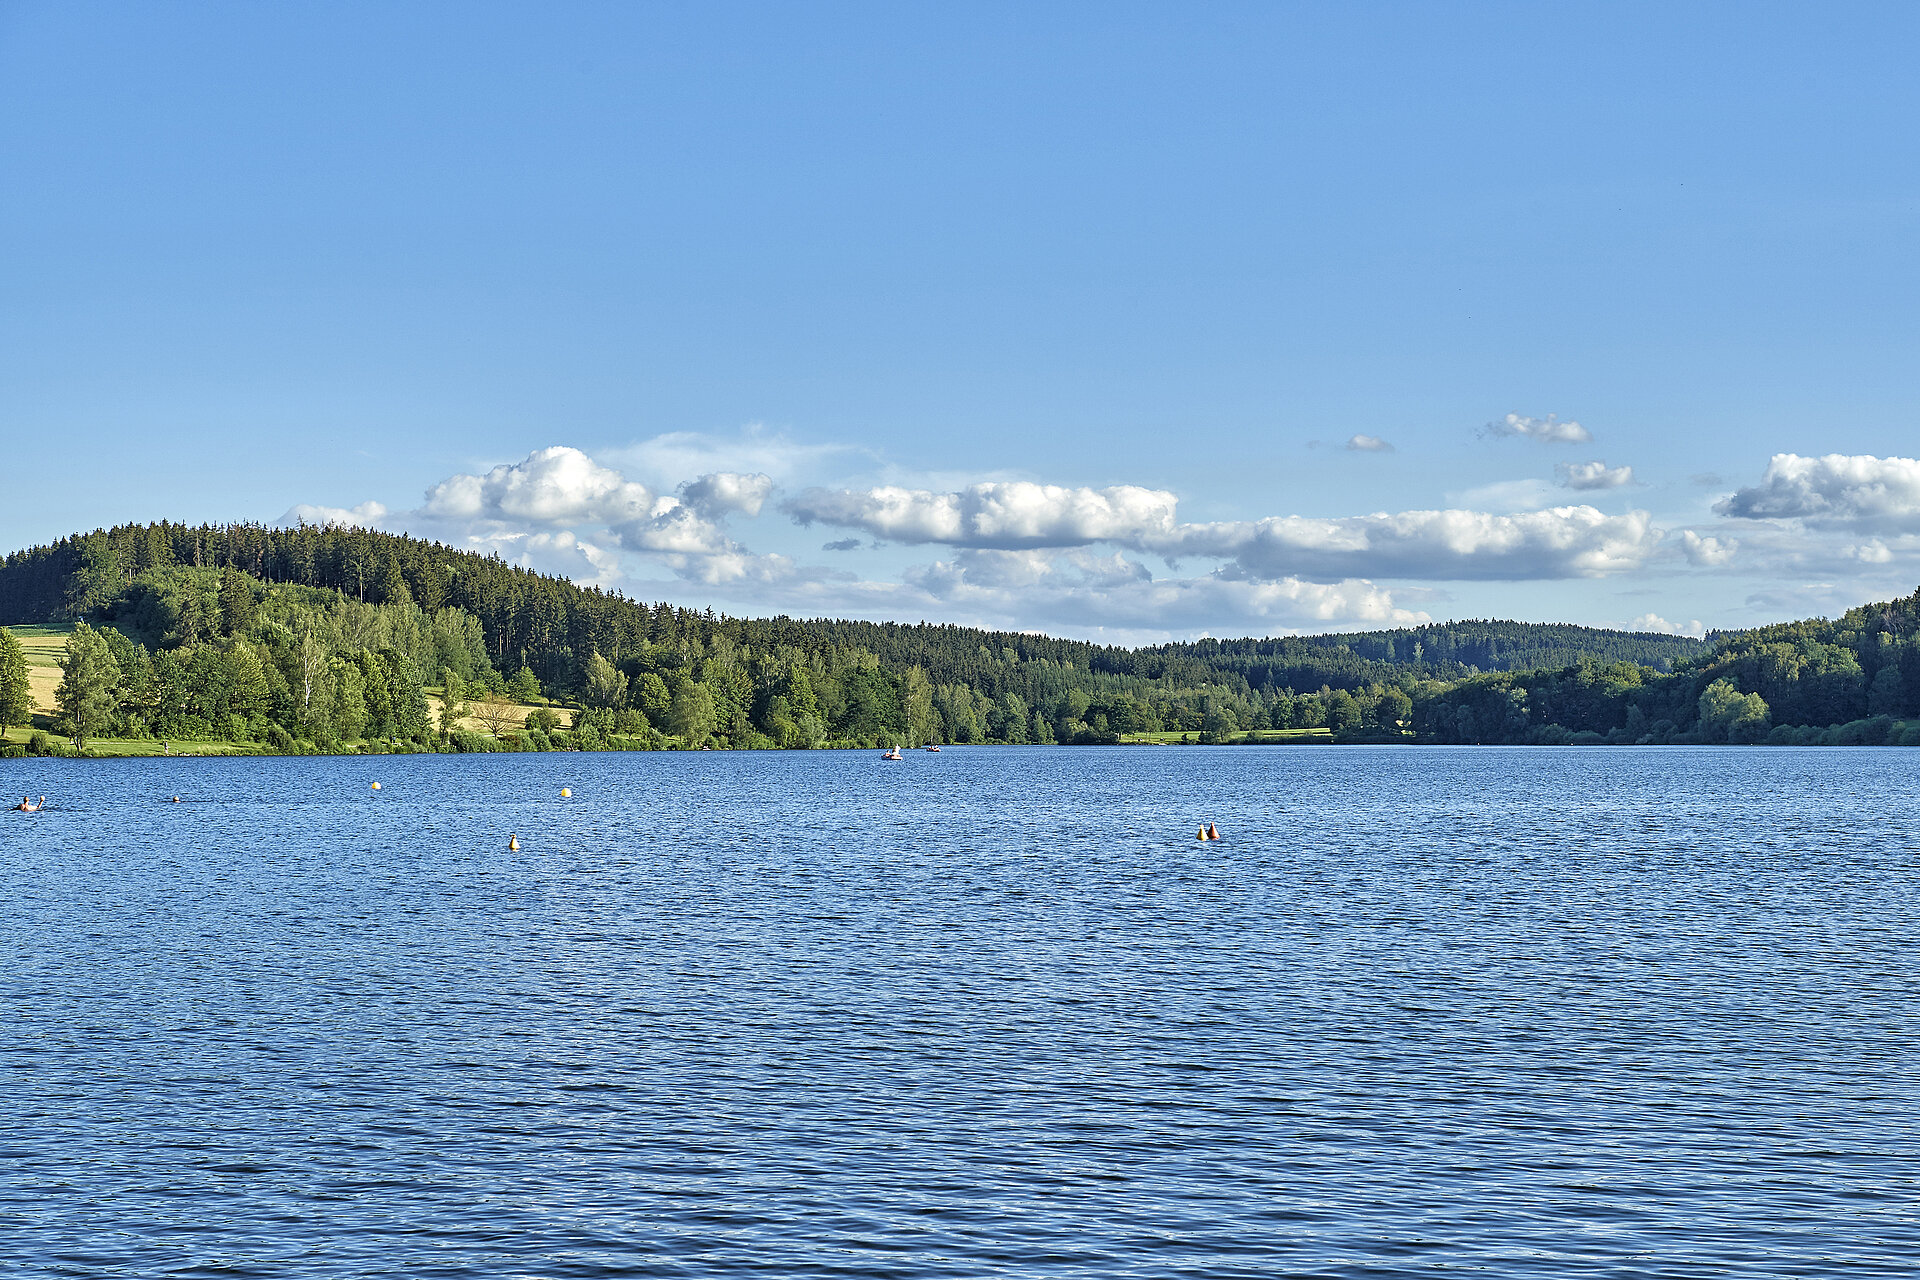 Im Vordergrund der See, Im Hintergrund grüne Hügel und blauer, leicht bewölkter Himmel